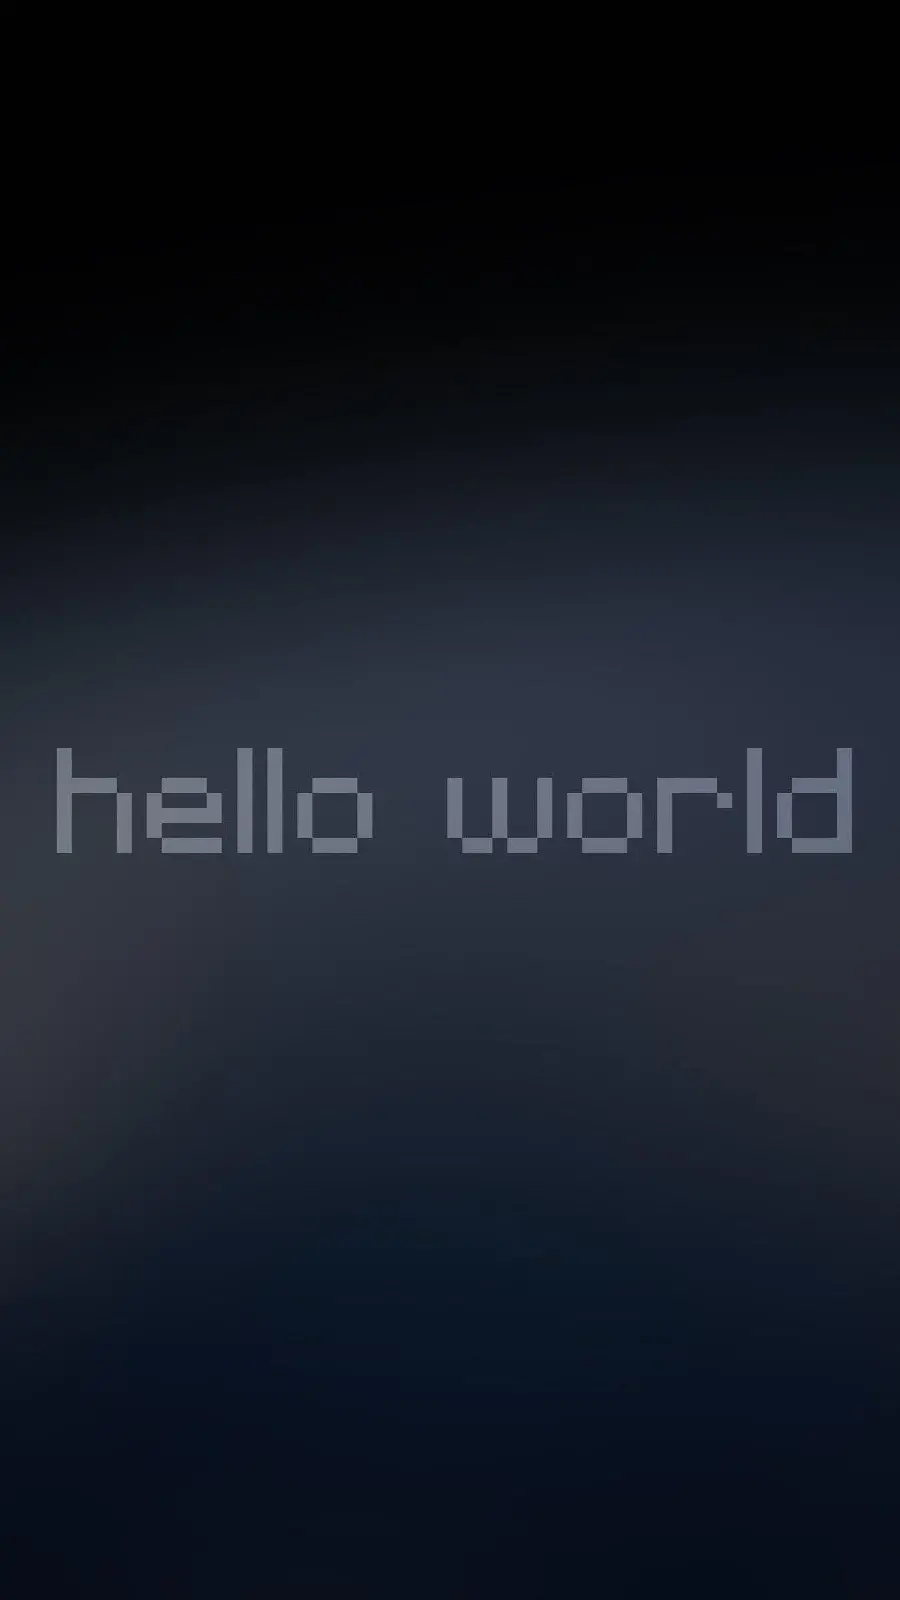 عکس هلو ورد hello world یا سلام جهان برای پروفایل برنامه نویسی